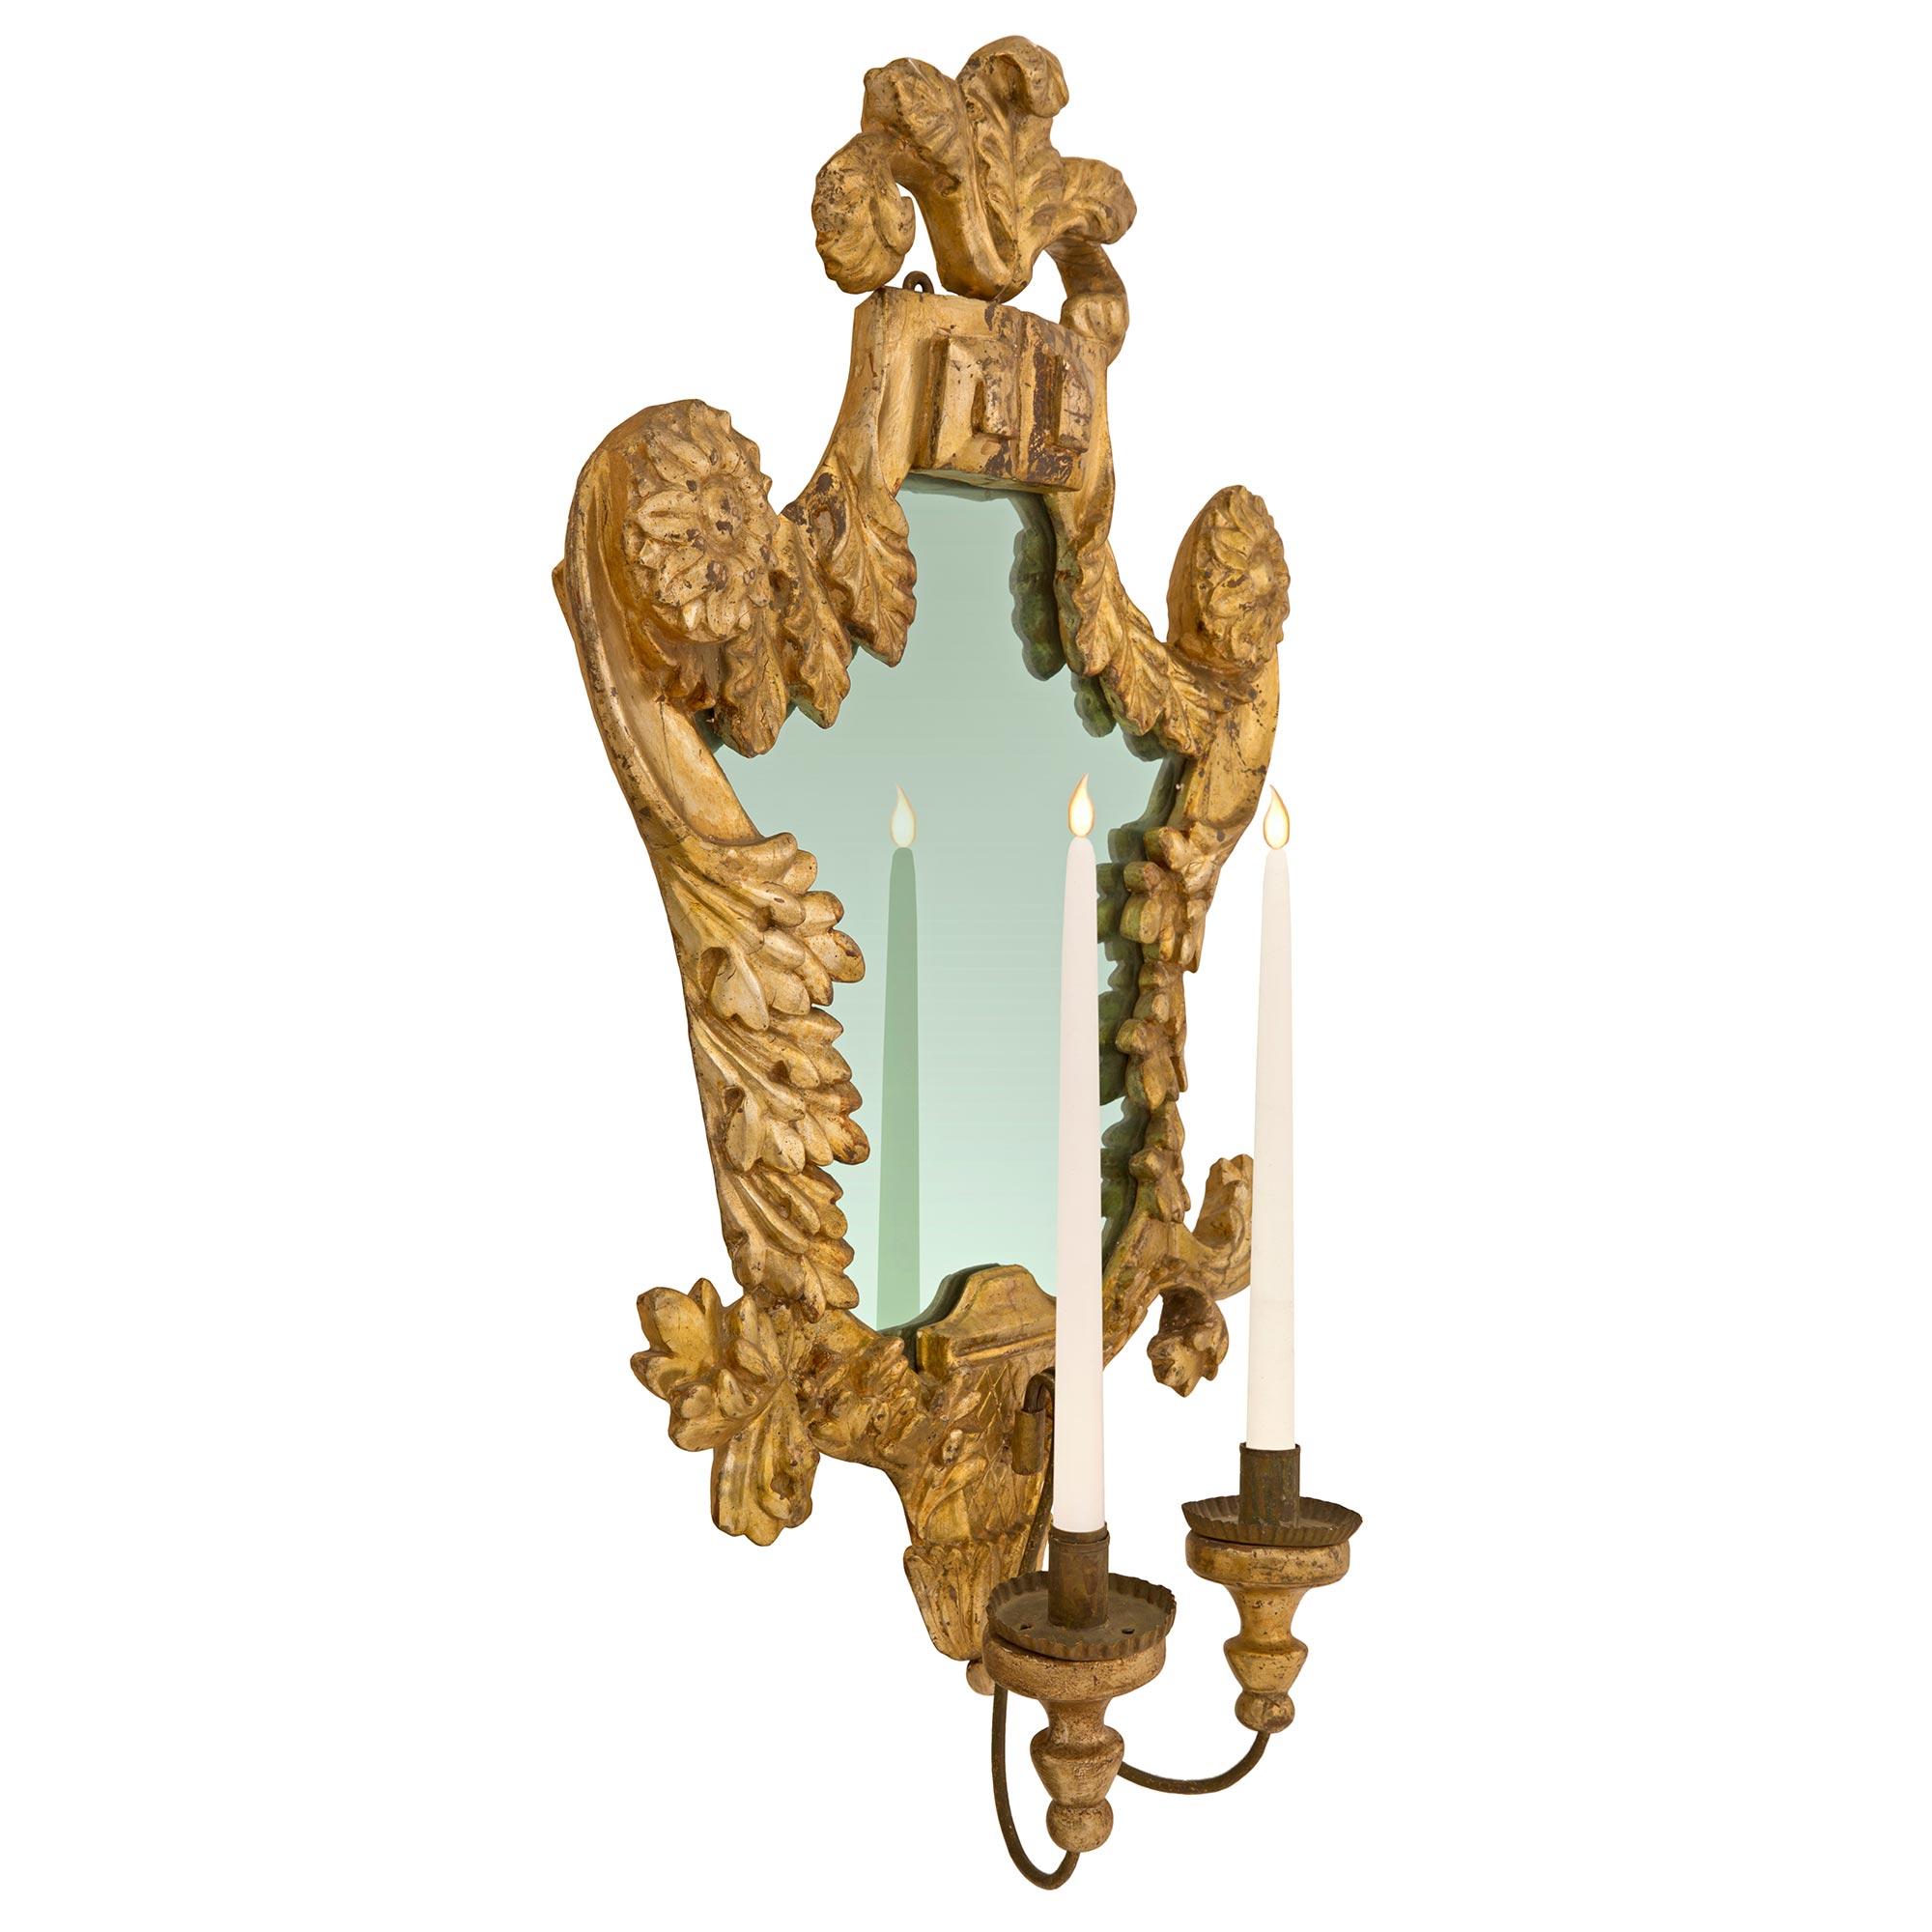 Une superbe paire d'appliques italiennes du XVIIIe siècle, de style vénitien, avec miroir en fer forgé. Chaque applique de forme magnifique conserve sa plaque de miroir d'origine, enchâssée dans des motifs feuillus sculptés très décoratifs et des